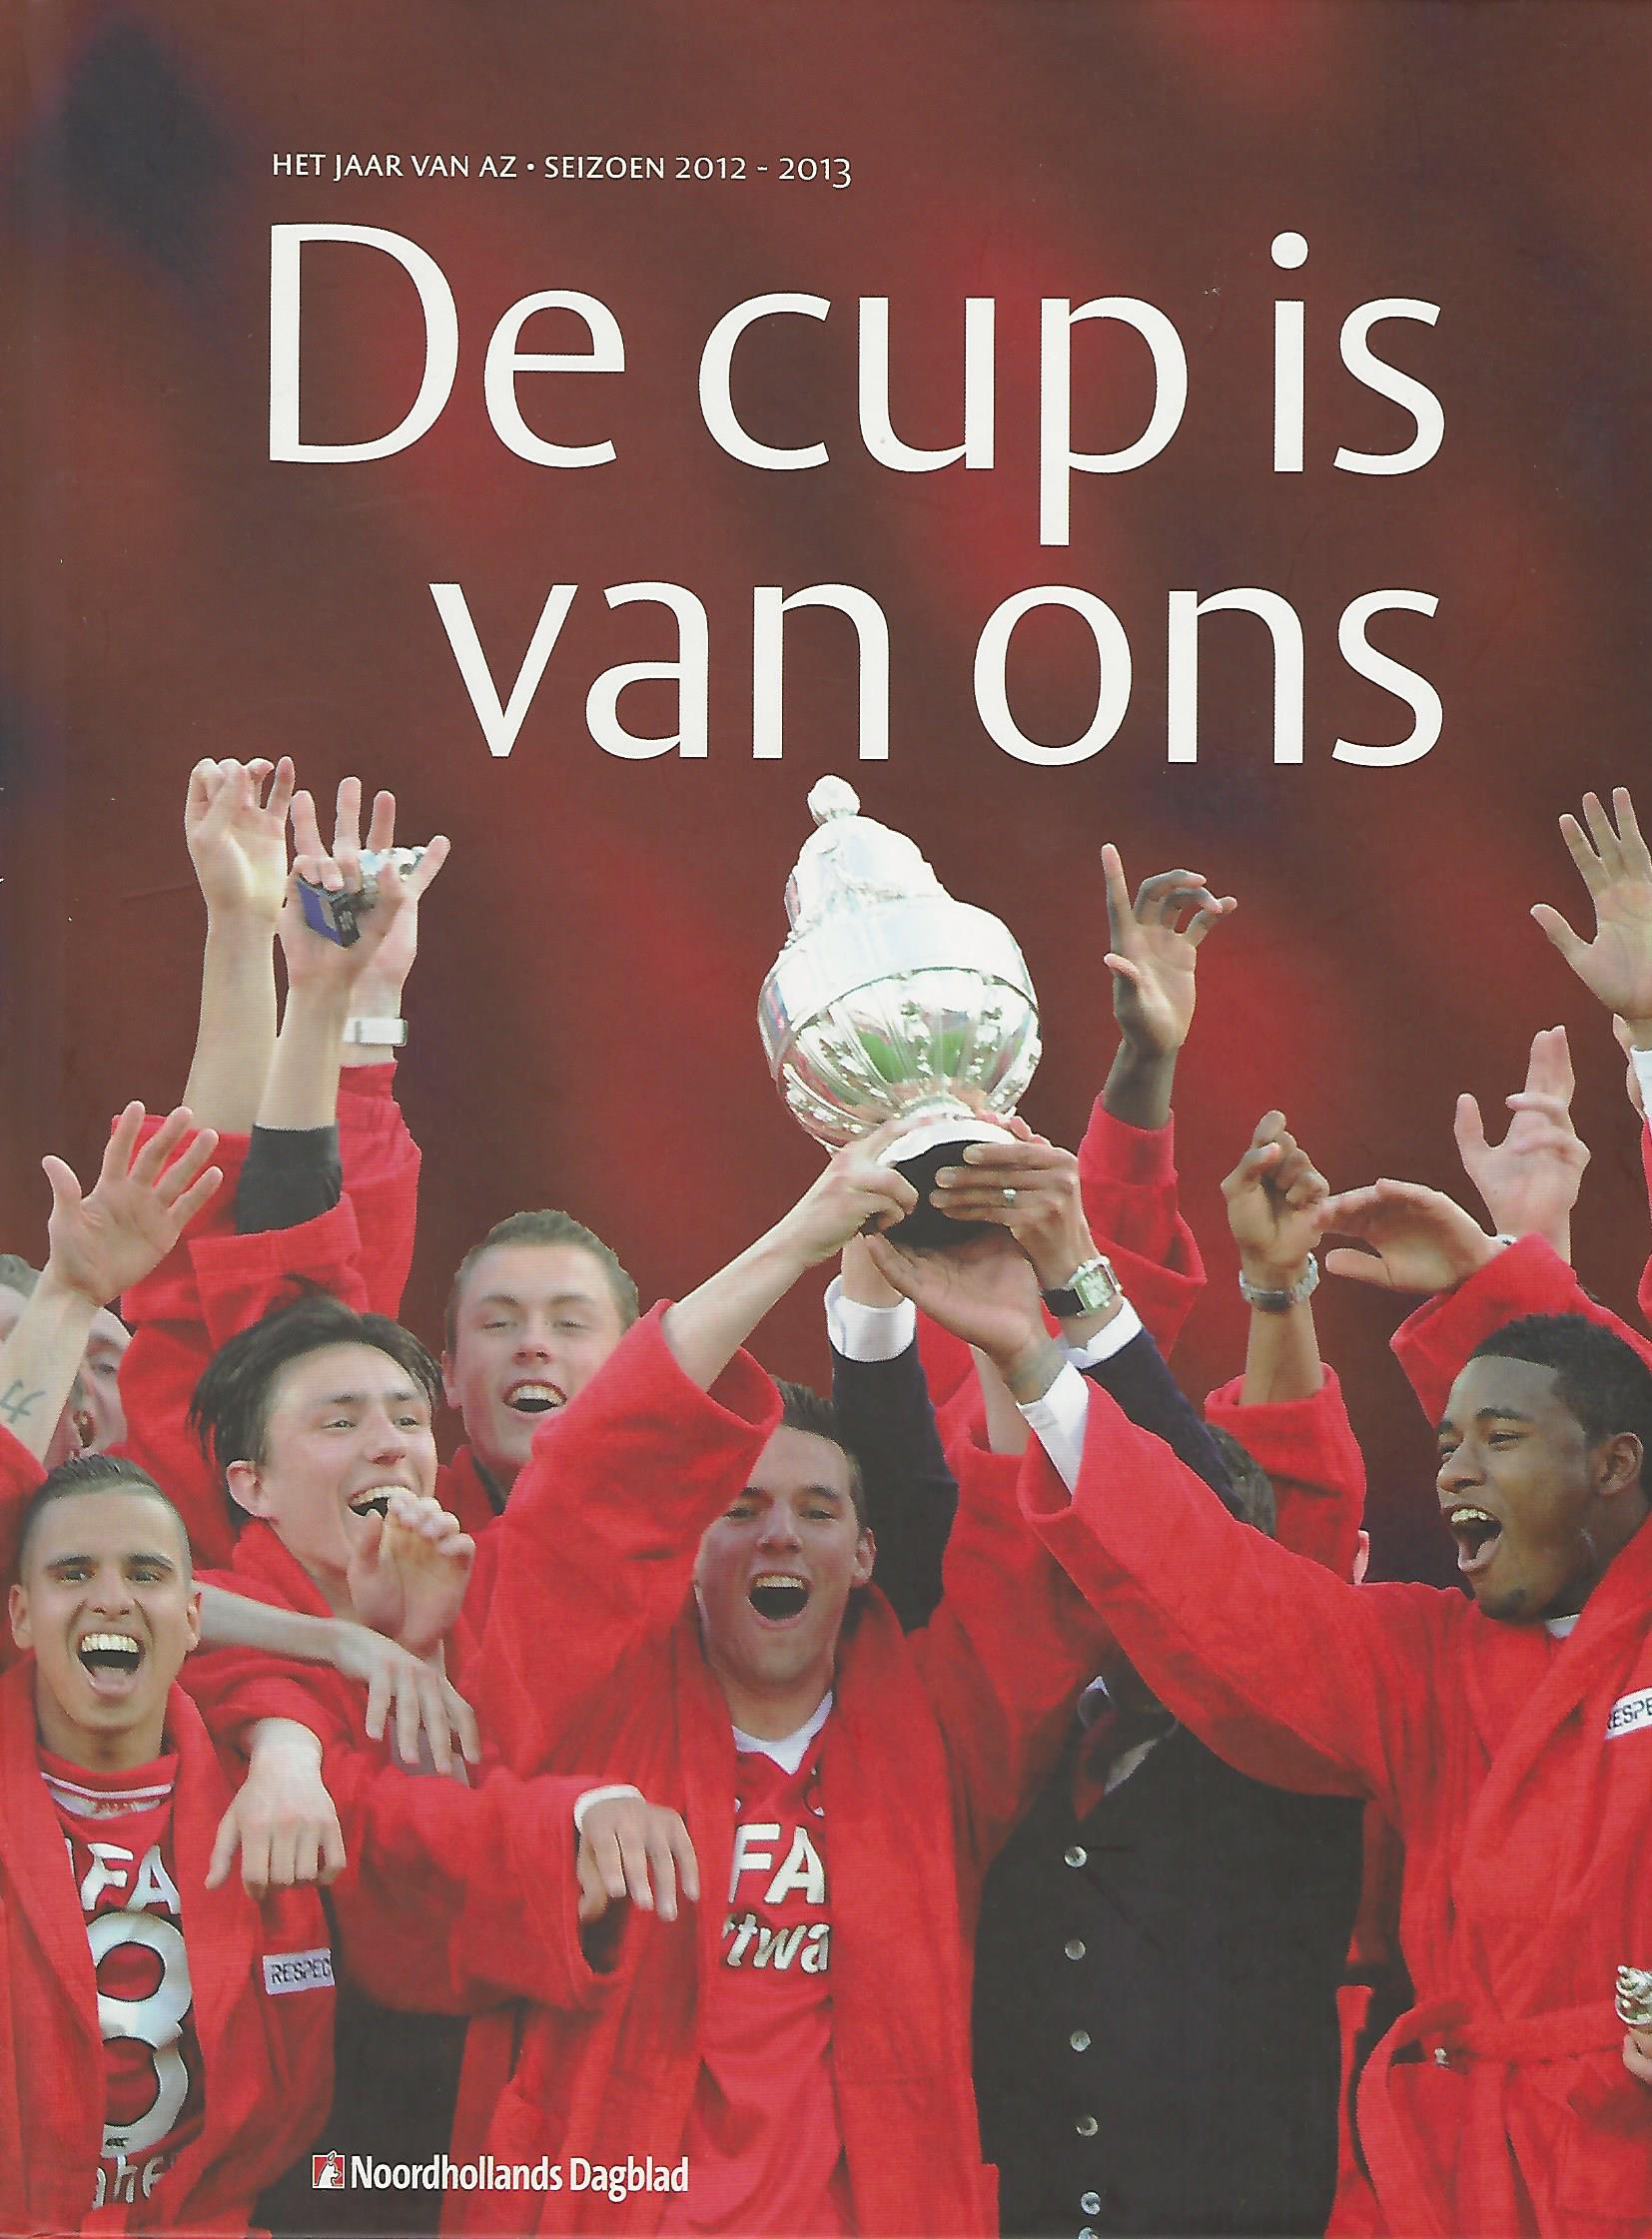 Aarts, Arnold en Brinkman, Theo - De cup is van ons - het jaar van AZ - 2012 - 2013 -Het jaar van AZ - seizoen 2012-2013